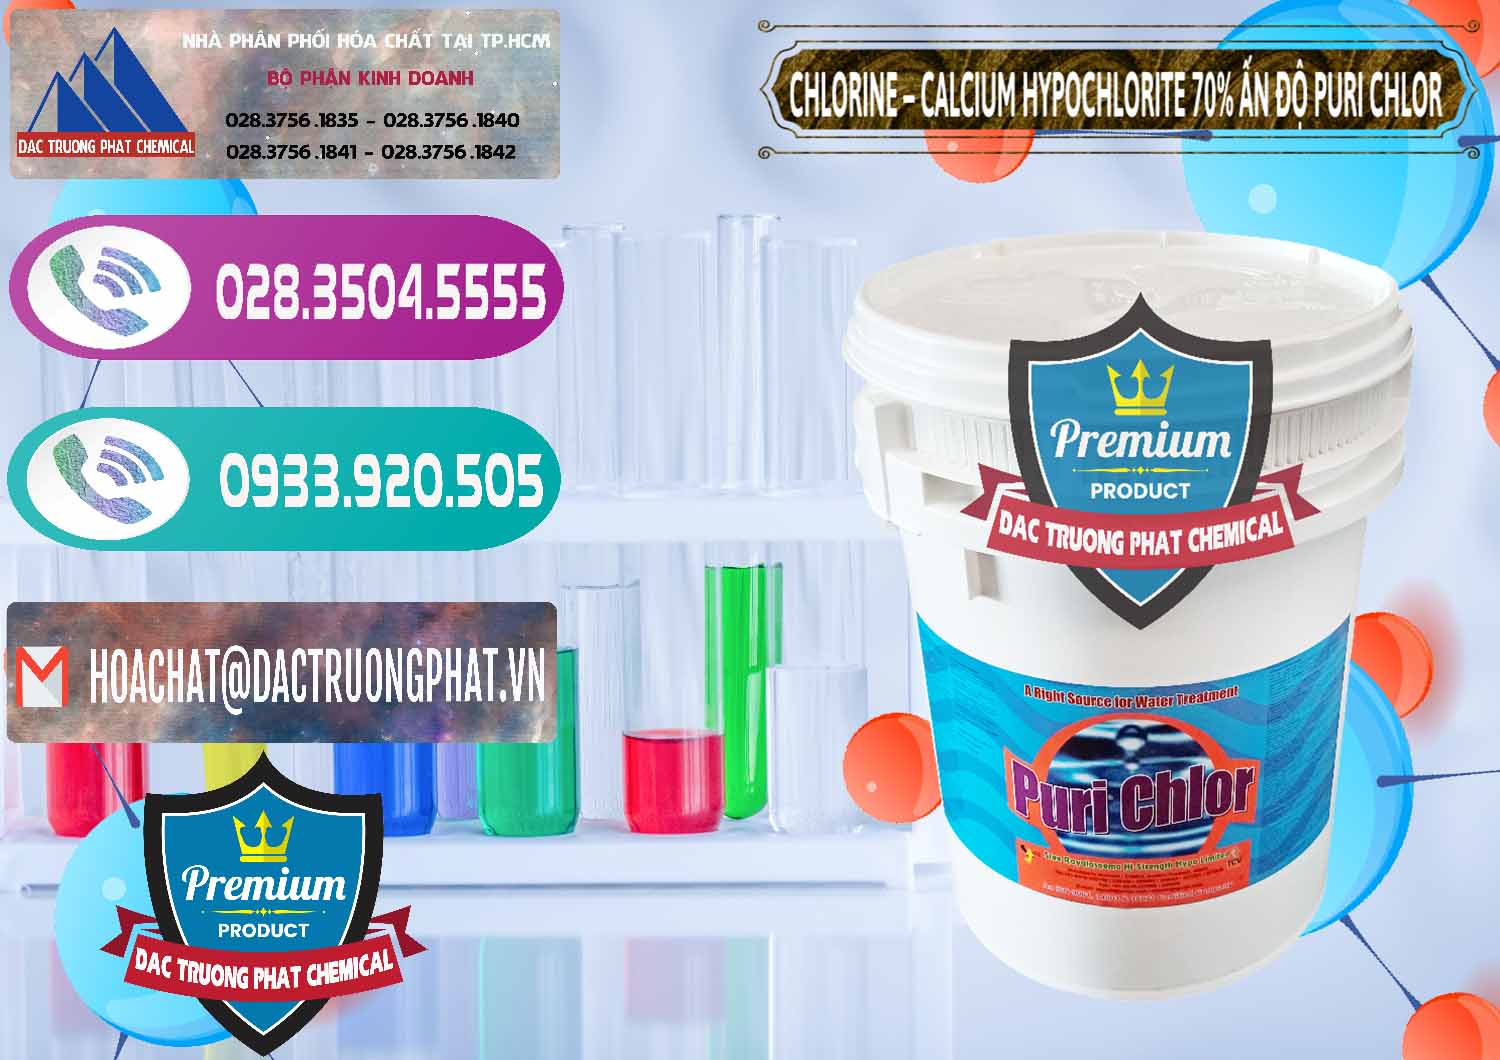 Nơi cung cấp & bán Chlorine – Clorin 70% Puri Chlo Ấn Độ India - 0123 - Phân phối & kinh doanh hóa chất tại TP.HCM - hoachatxulynuoc.com